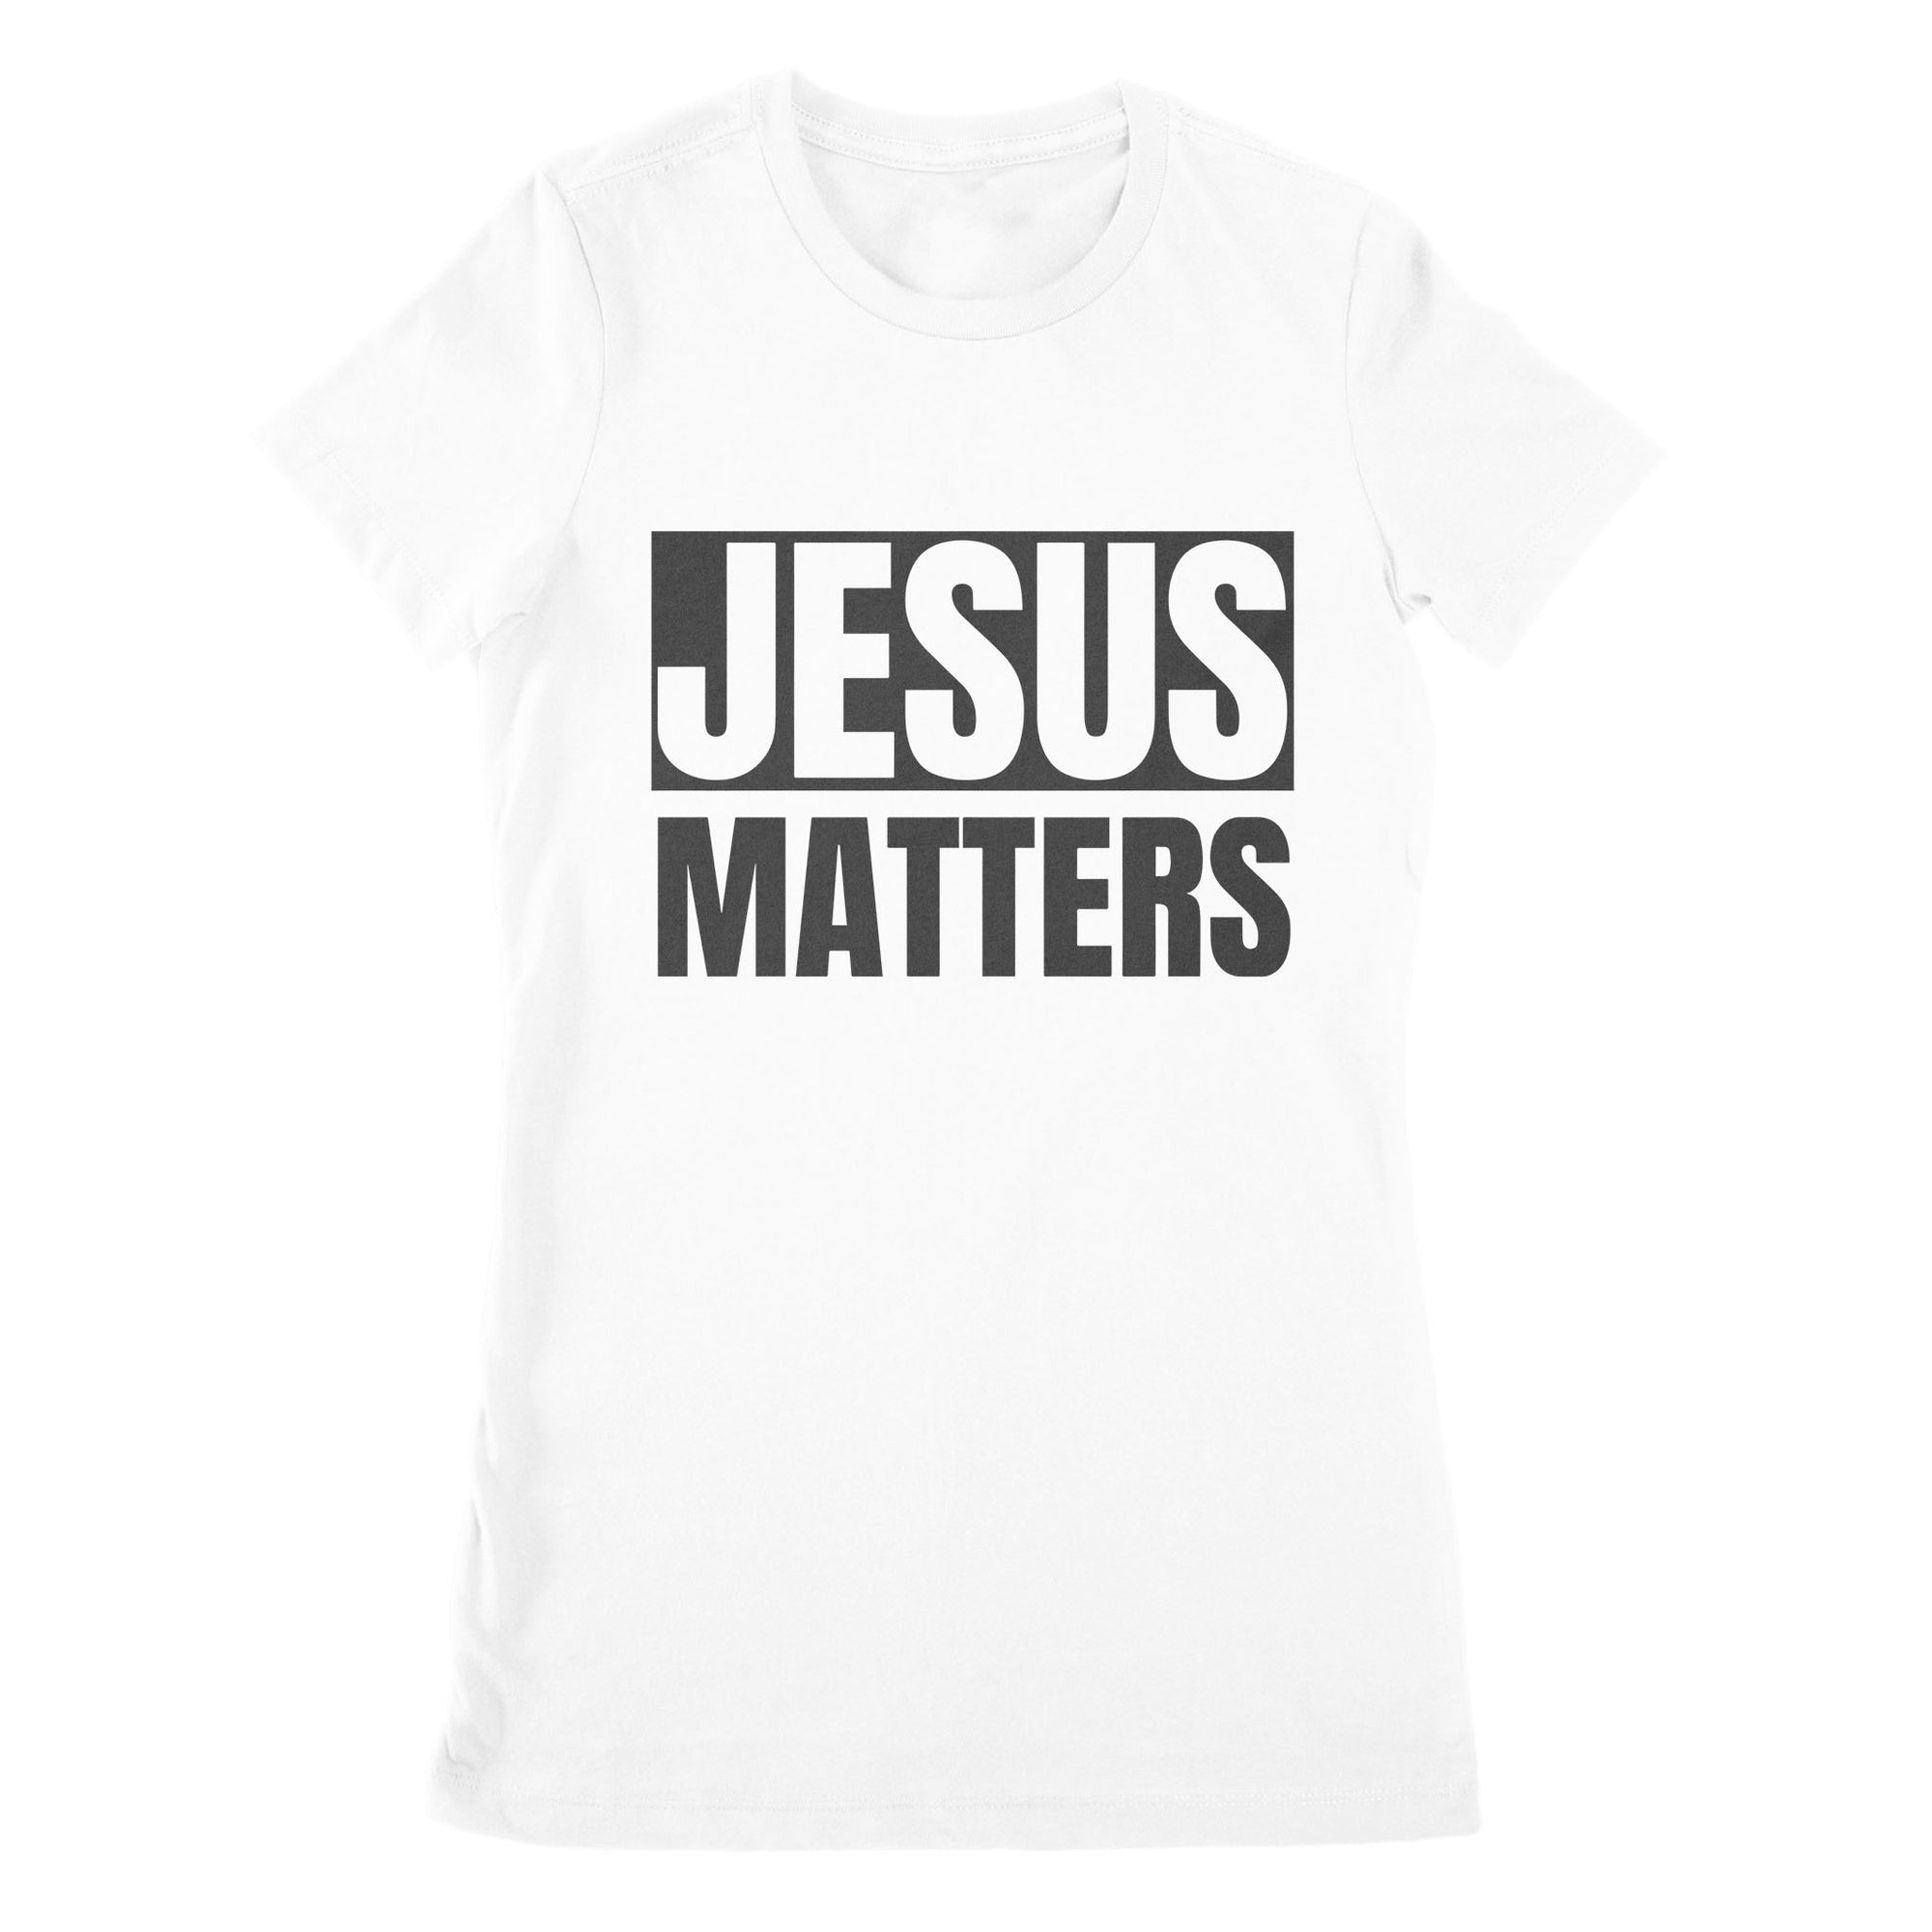 Premium Women's T-shirt - Jesus Matters